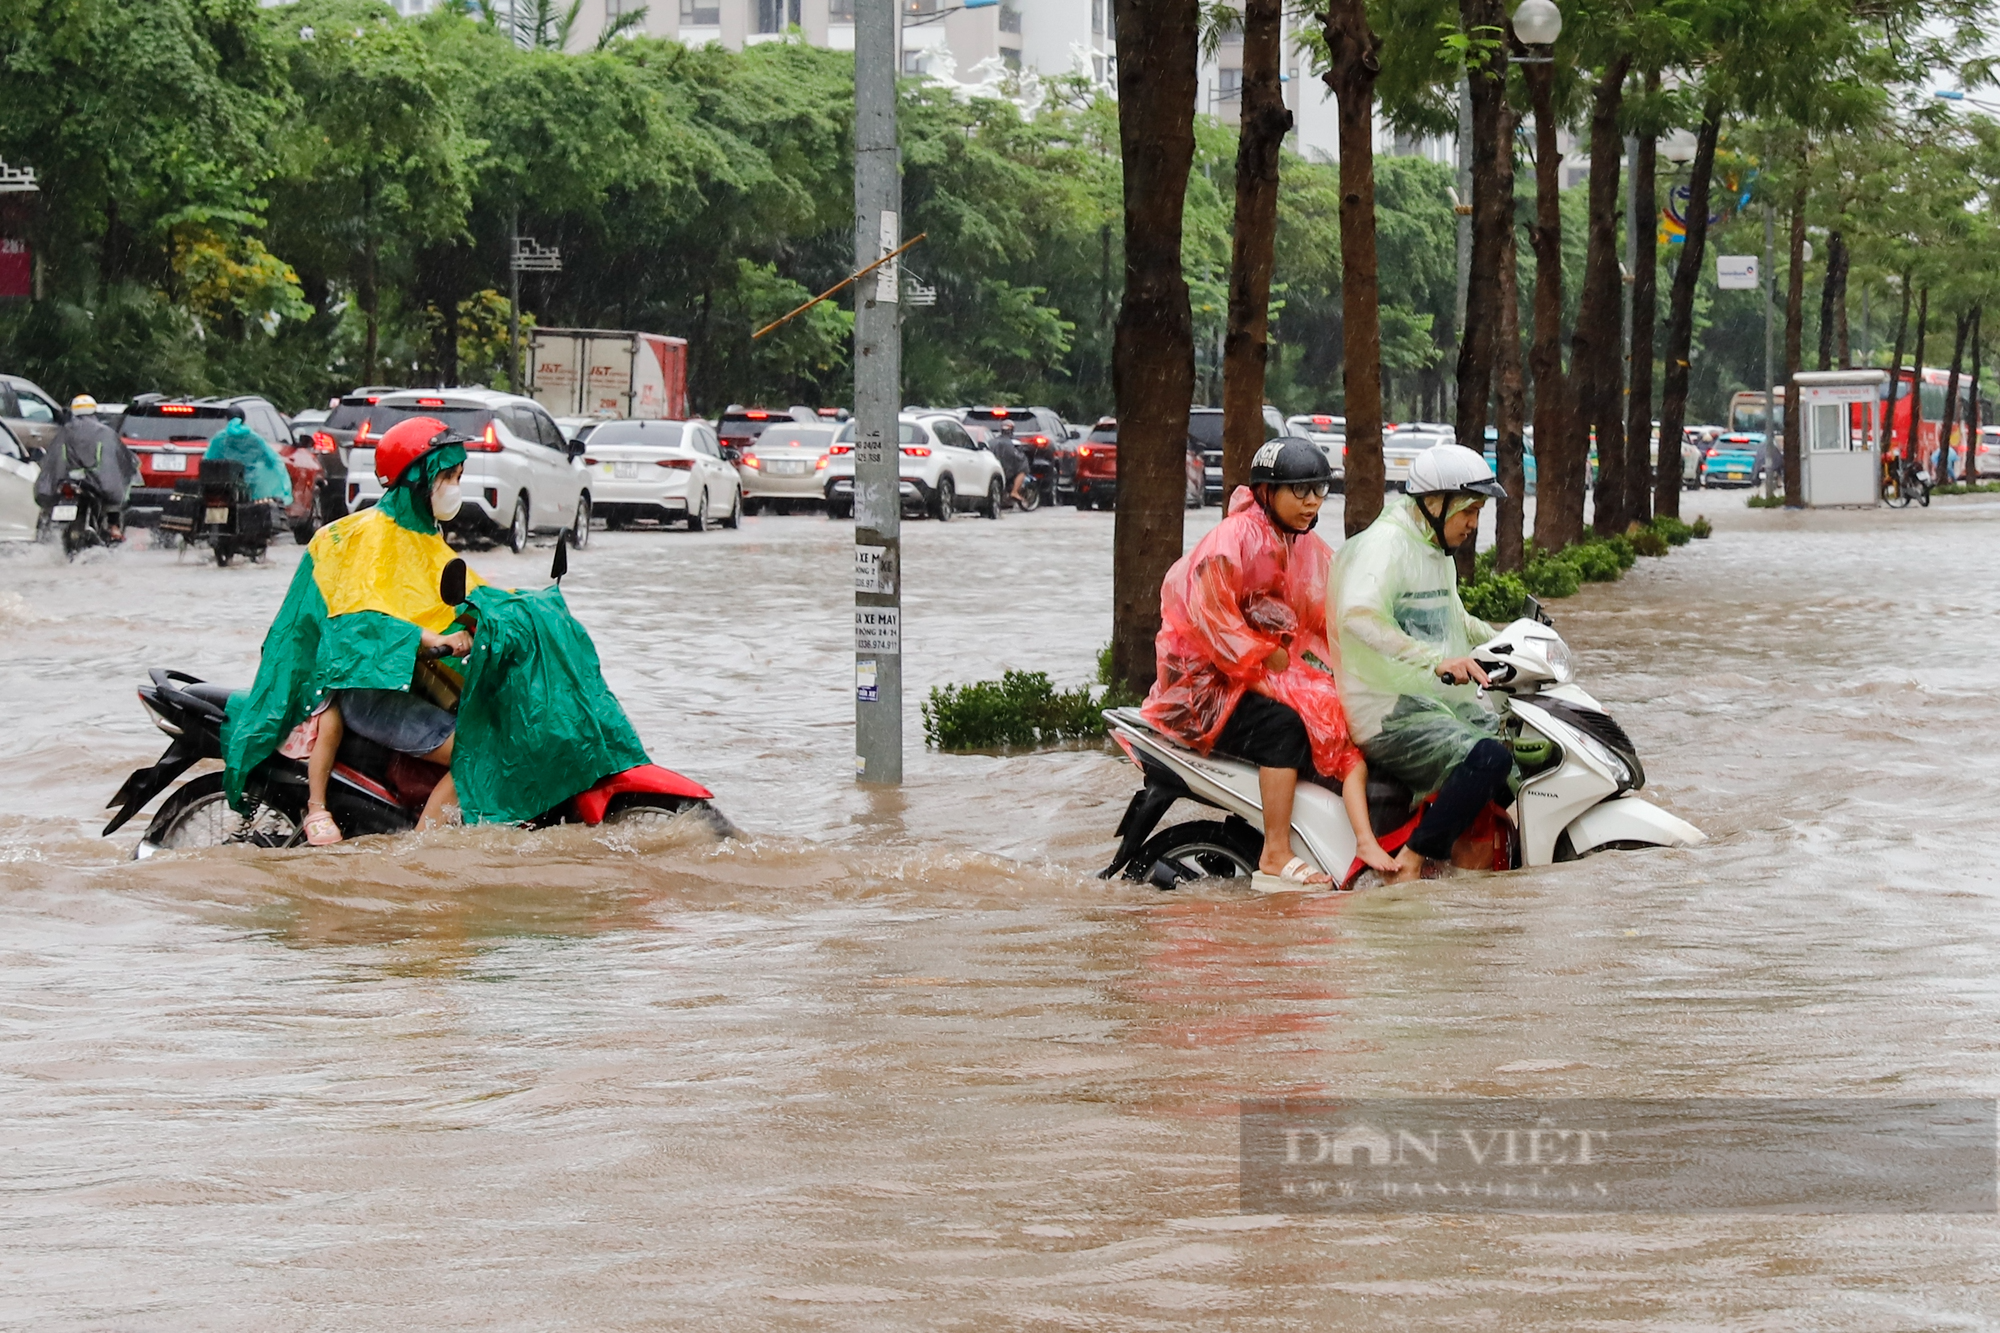 Đường trước trung tâm thương mại lớn nhất Hà Nội ngập sâu kéo dài hàng Km - Ảnh 12.